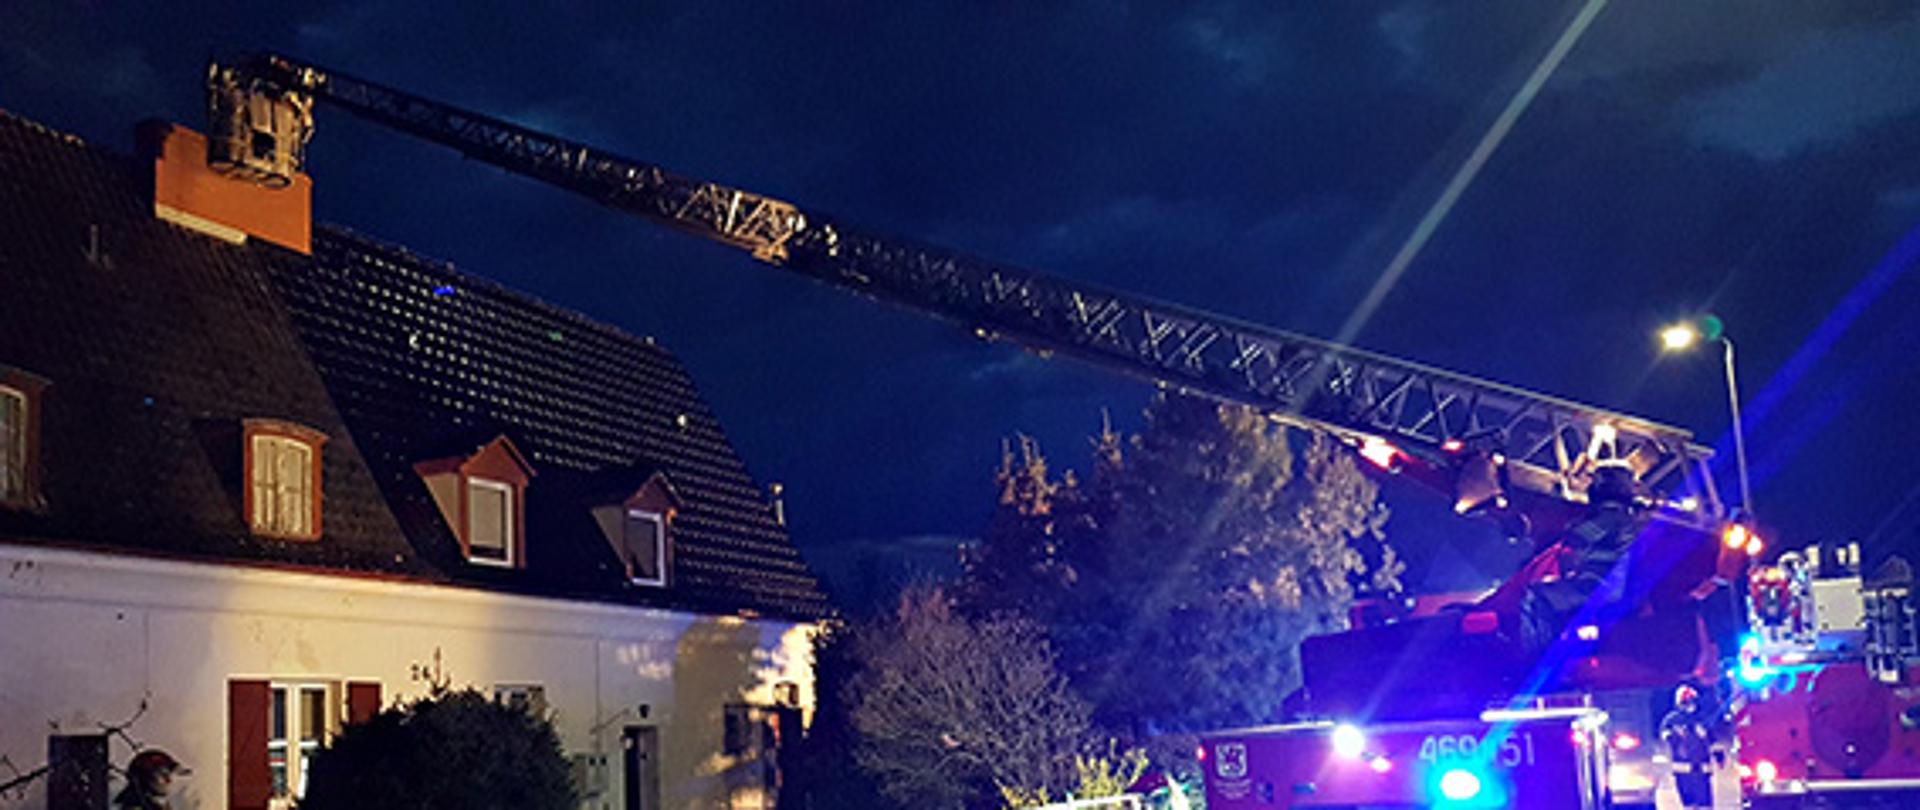 Na zdjęciu widać działania strażaków w porze nocnej. Dwóch strażaków przy pomocy strażackiej drabiny gasi pożar sadzy w kominie.